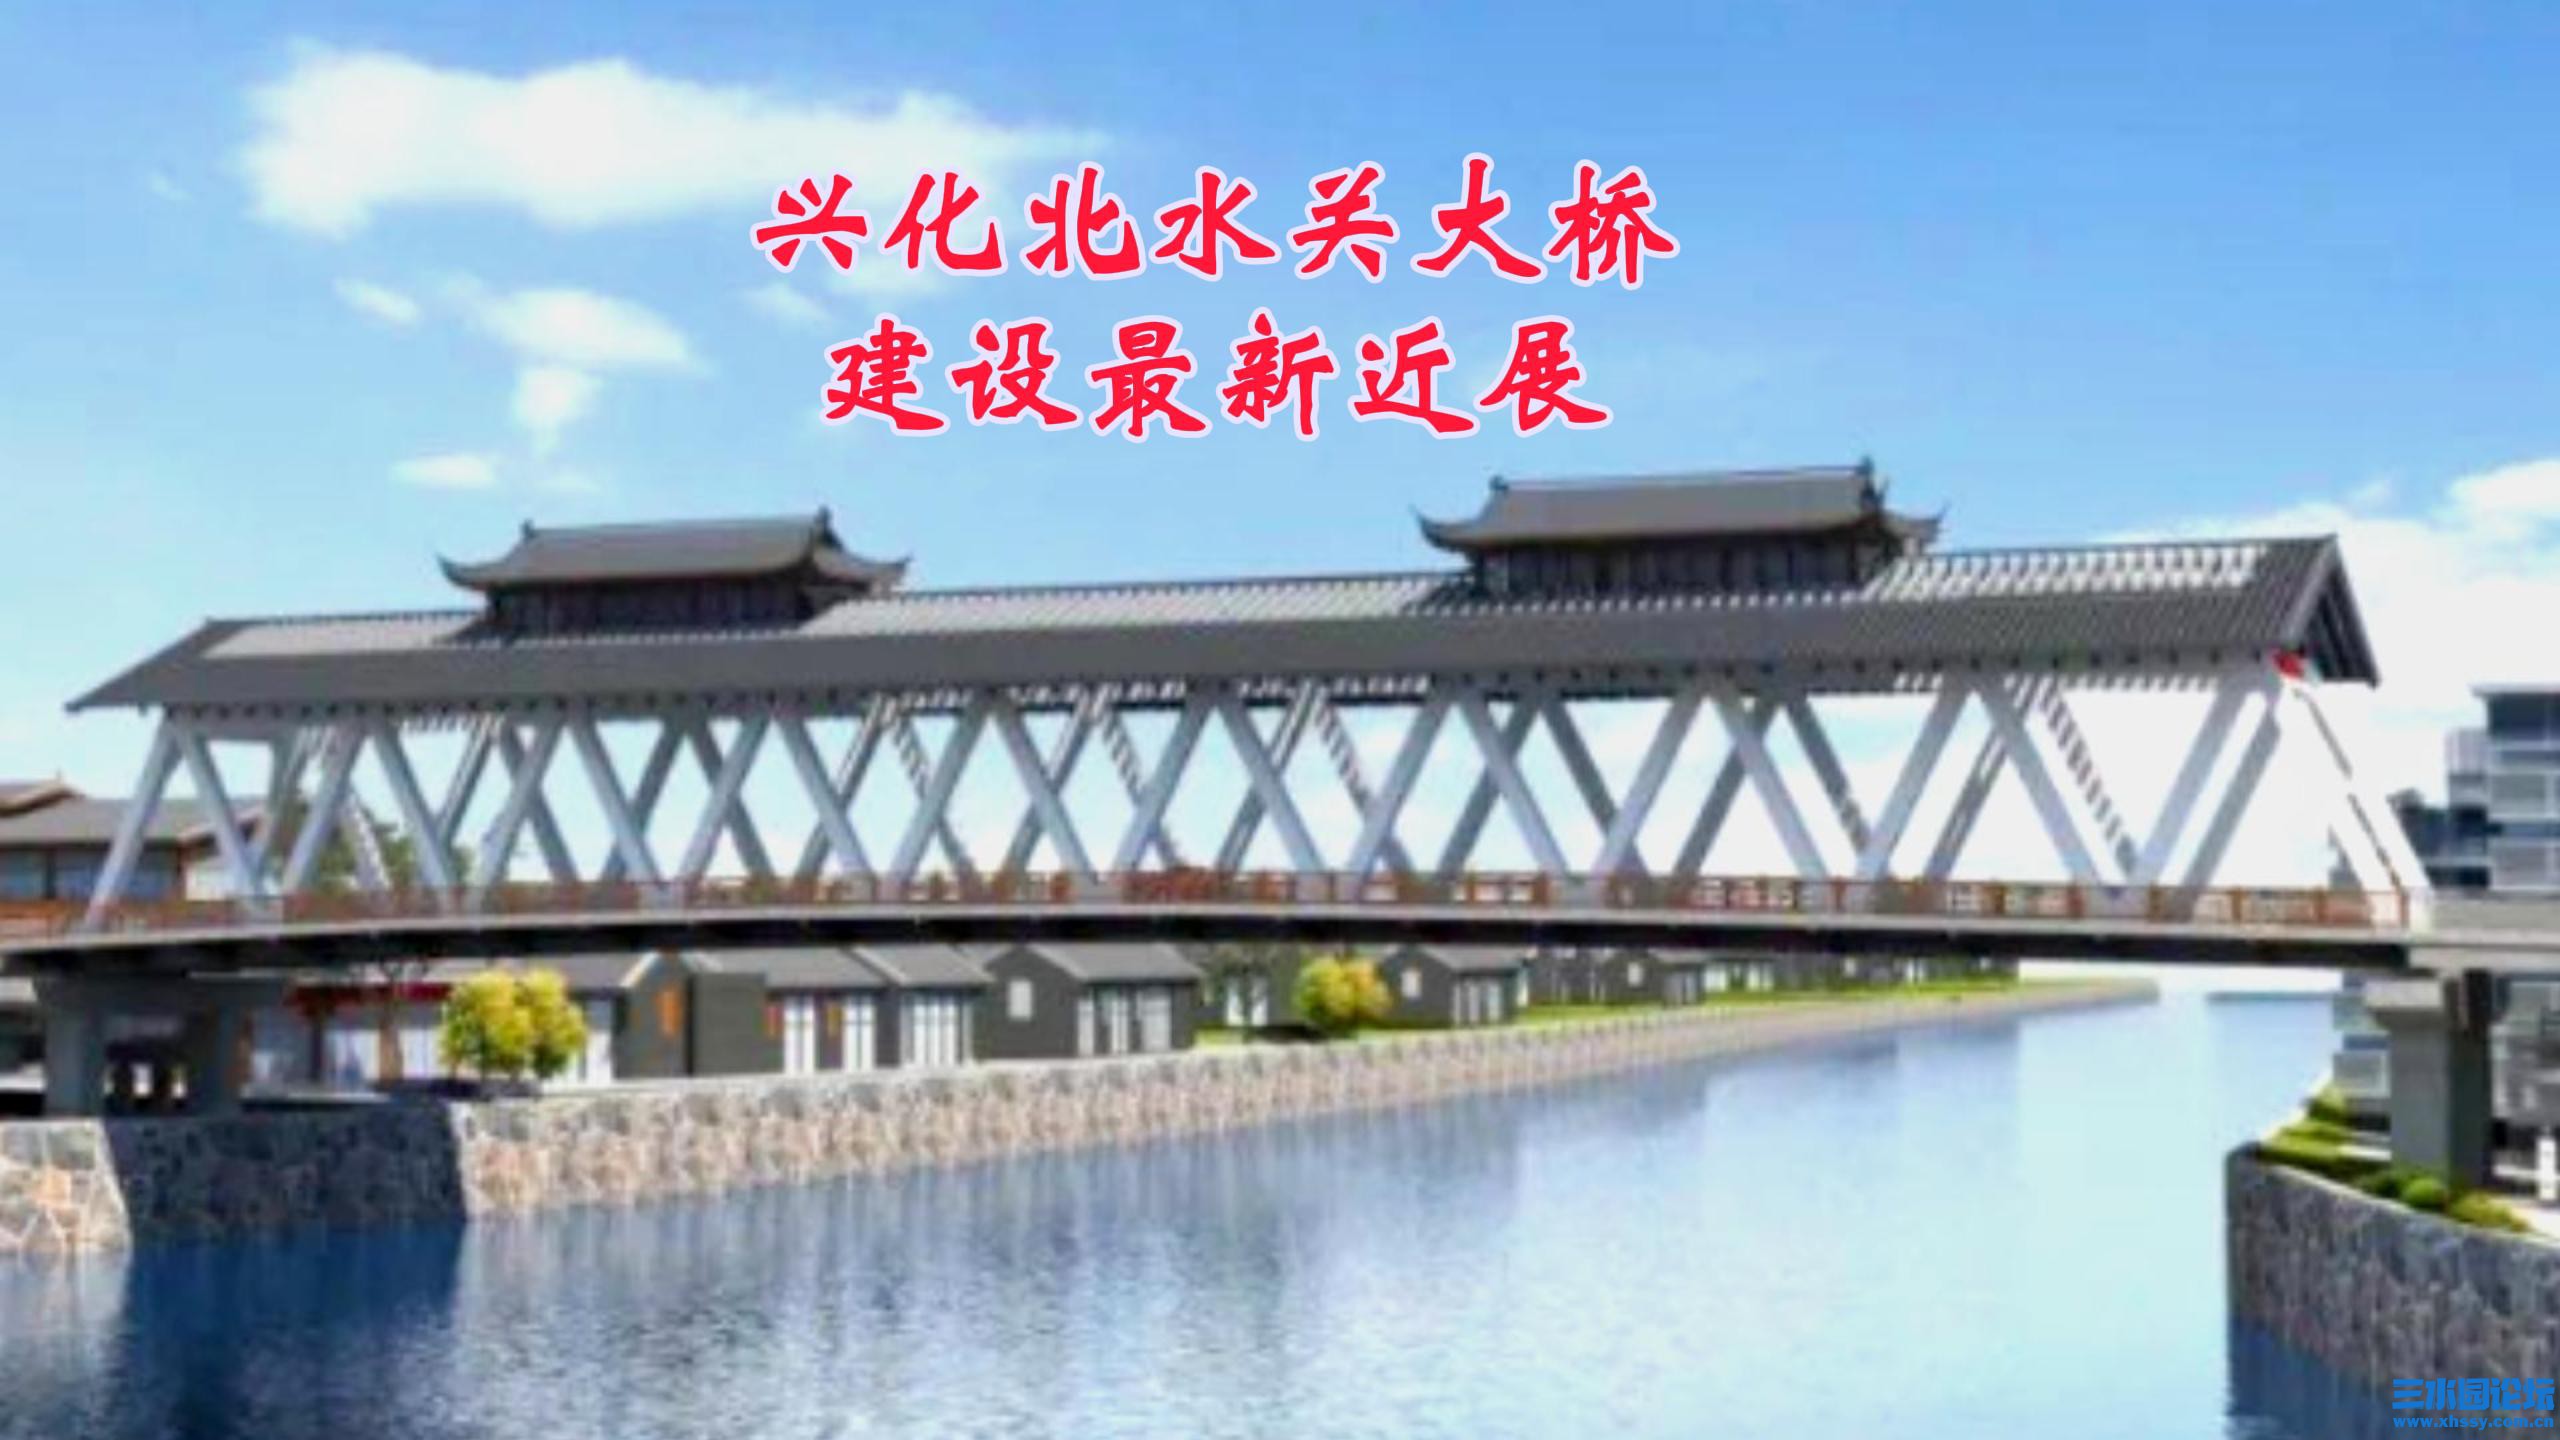 兴化北水关大桥建设最新进展-封面.jpg